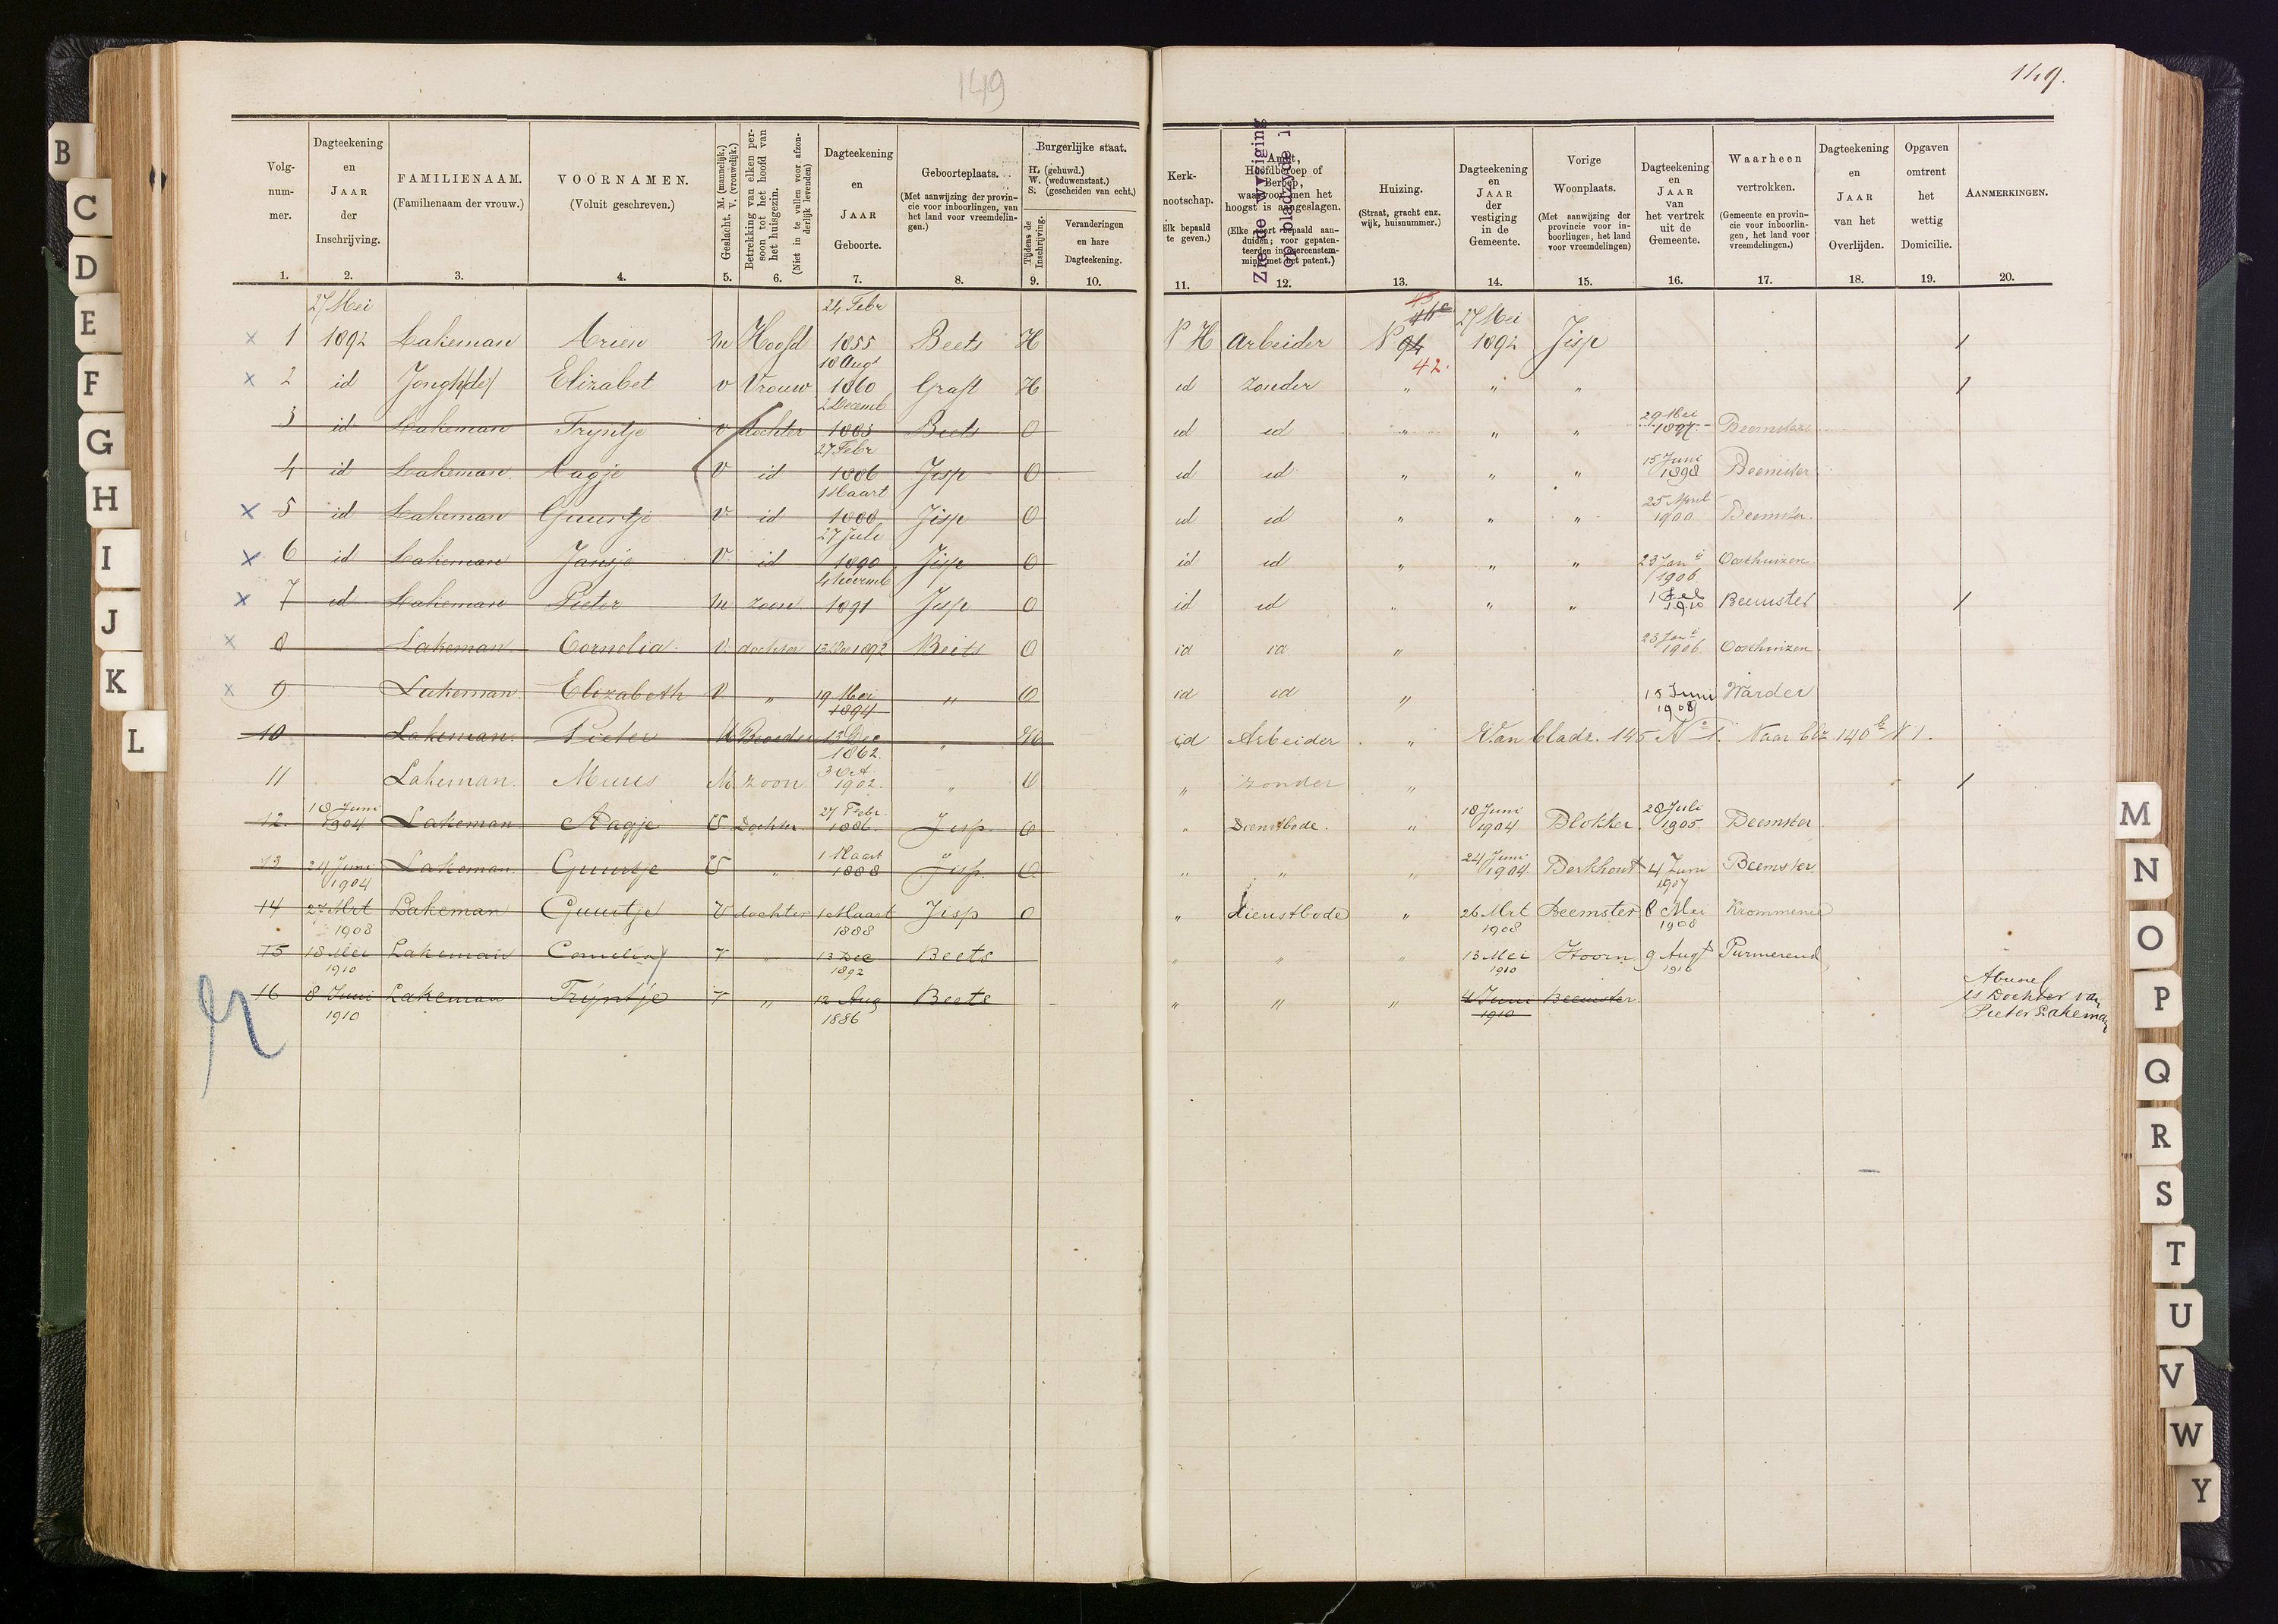 bevolkingsregister_beets_1883-1910_blz_149.jpg